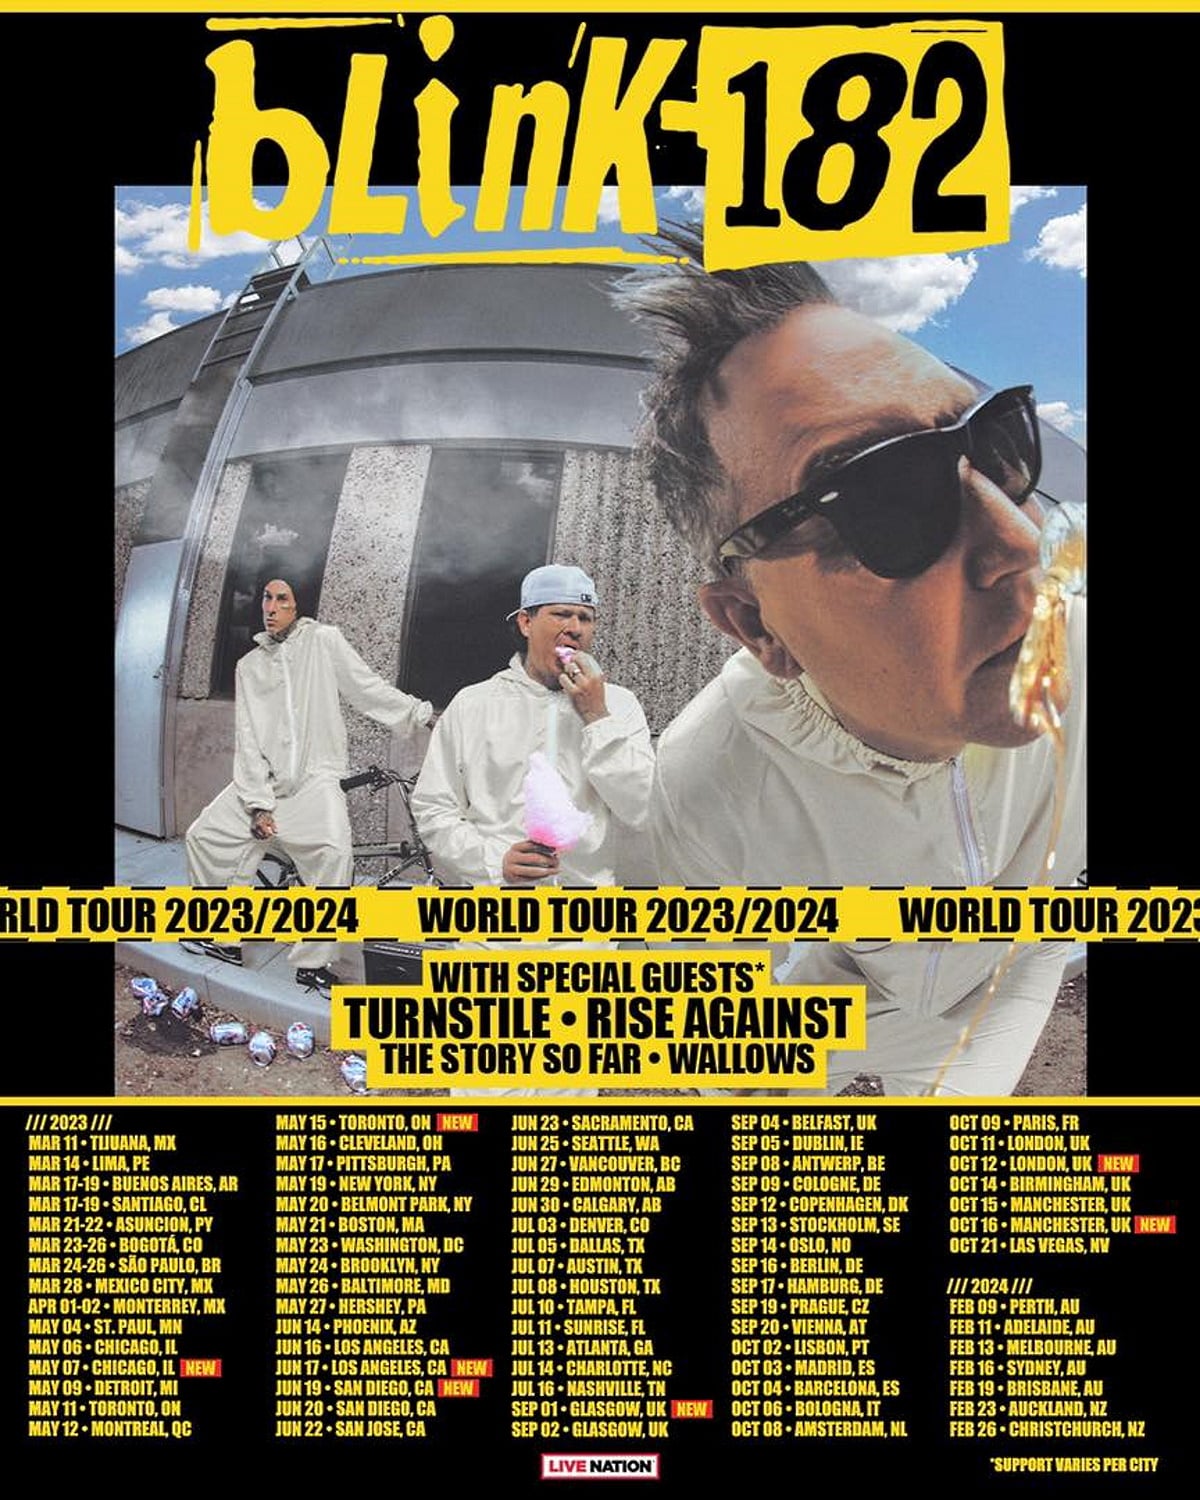 BLINK tour dates